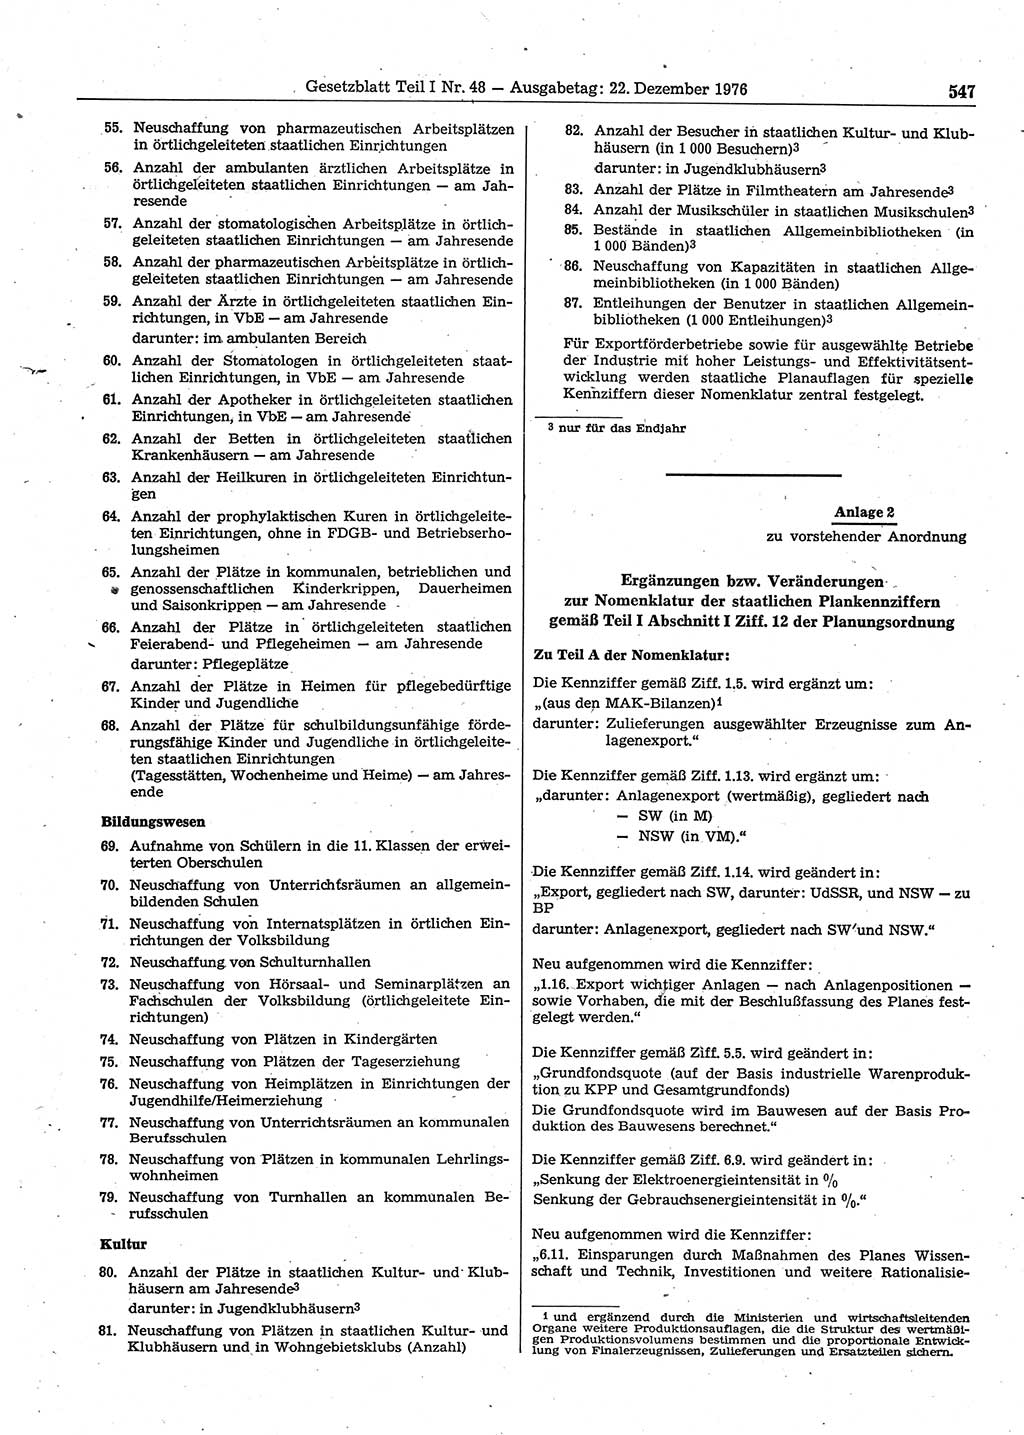 Gesetzblatt (GBl.) der Deutschen Demokratischen Republik (DDR) Teil Ⅰ 1976, Seite 547 (GBl. DDR Ⅰ 1976, S. 547)